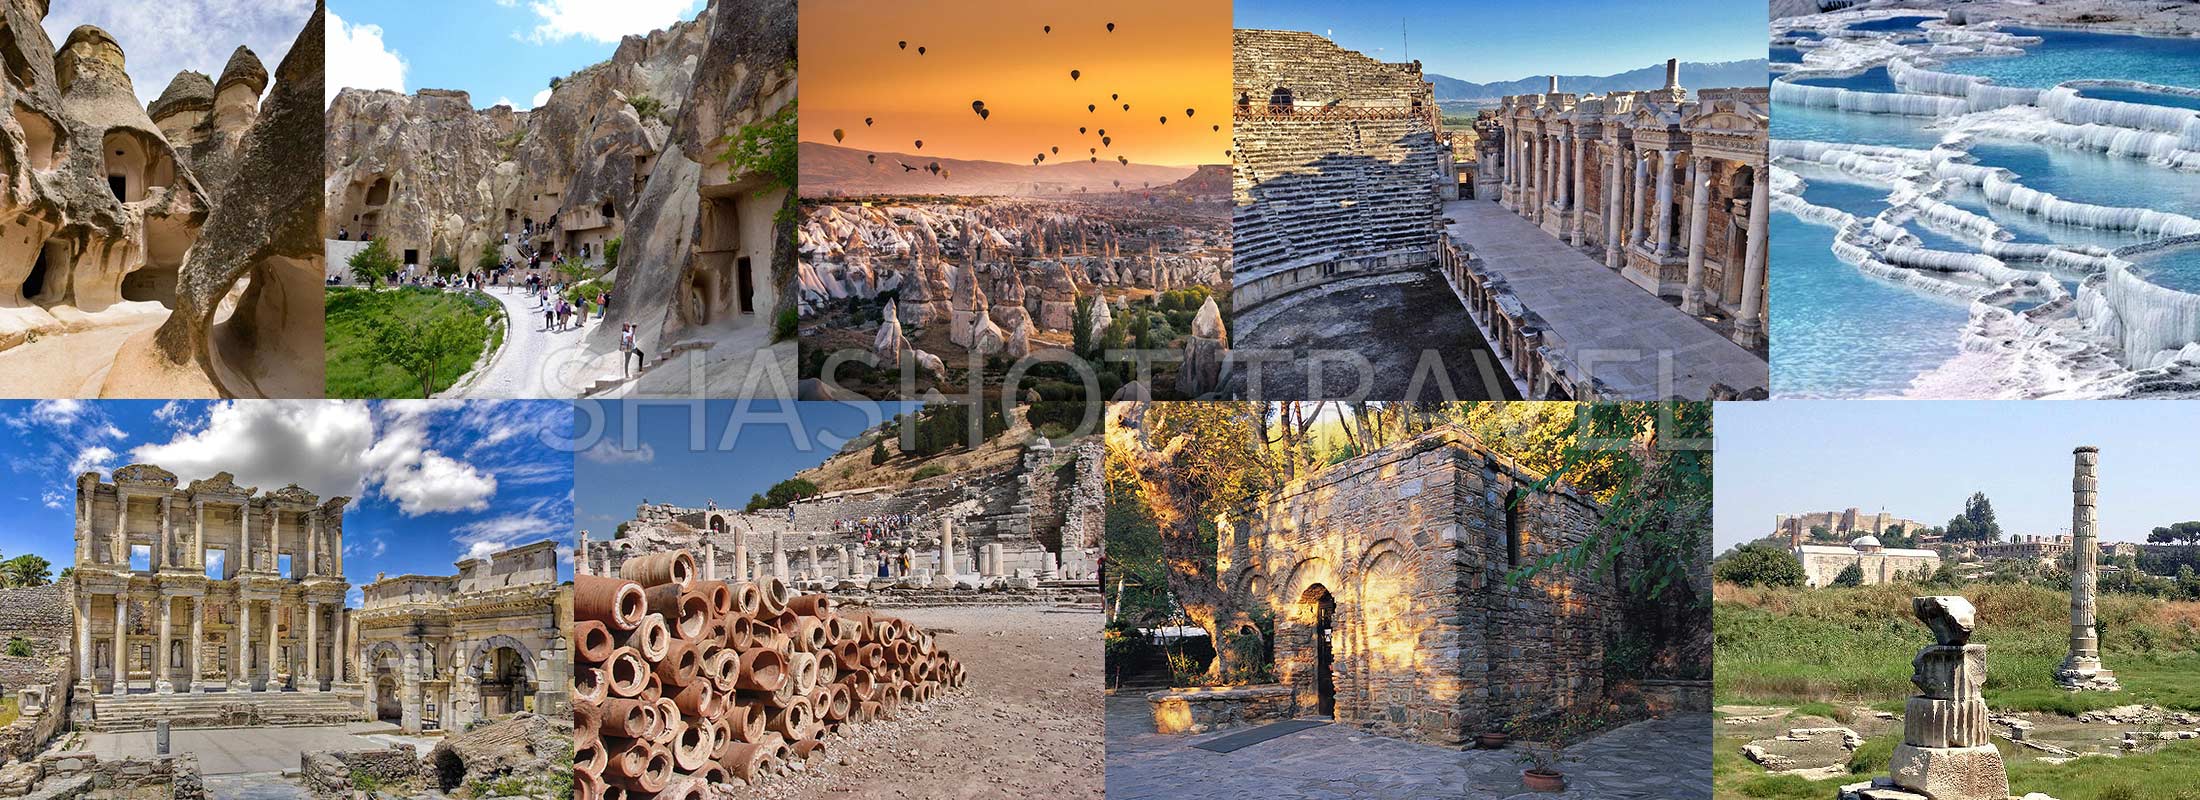 5-days-turkey-package-tours-cappadocia-pamukkale-hierapolis-ephesus-virgin-mary-house